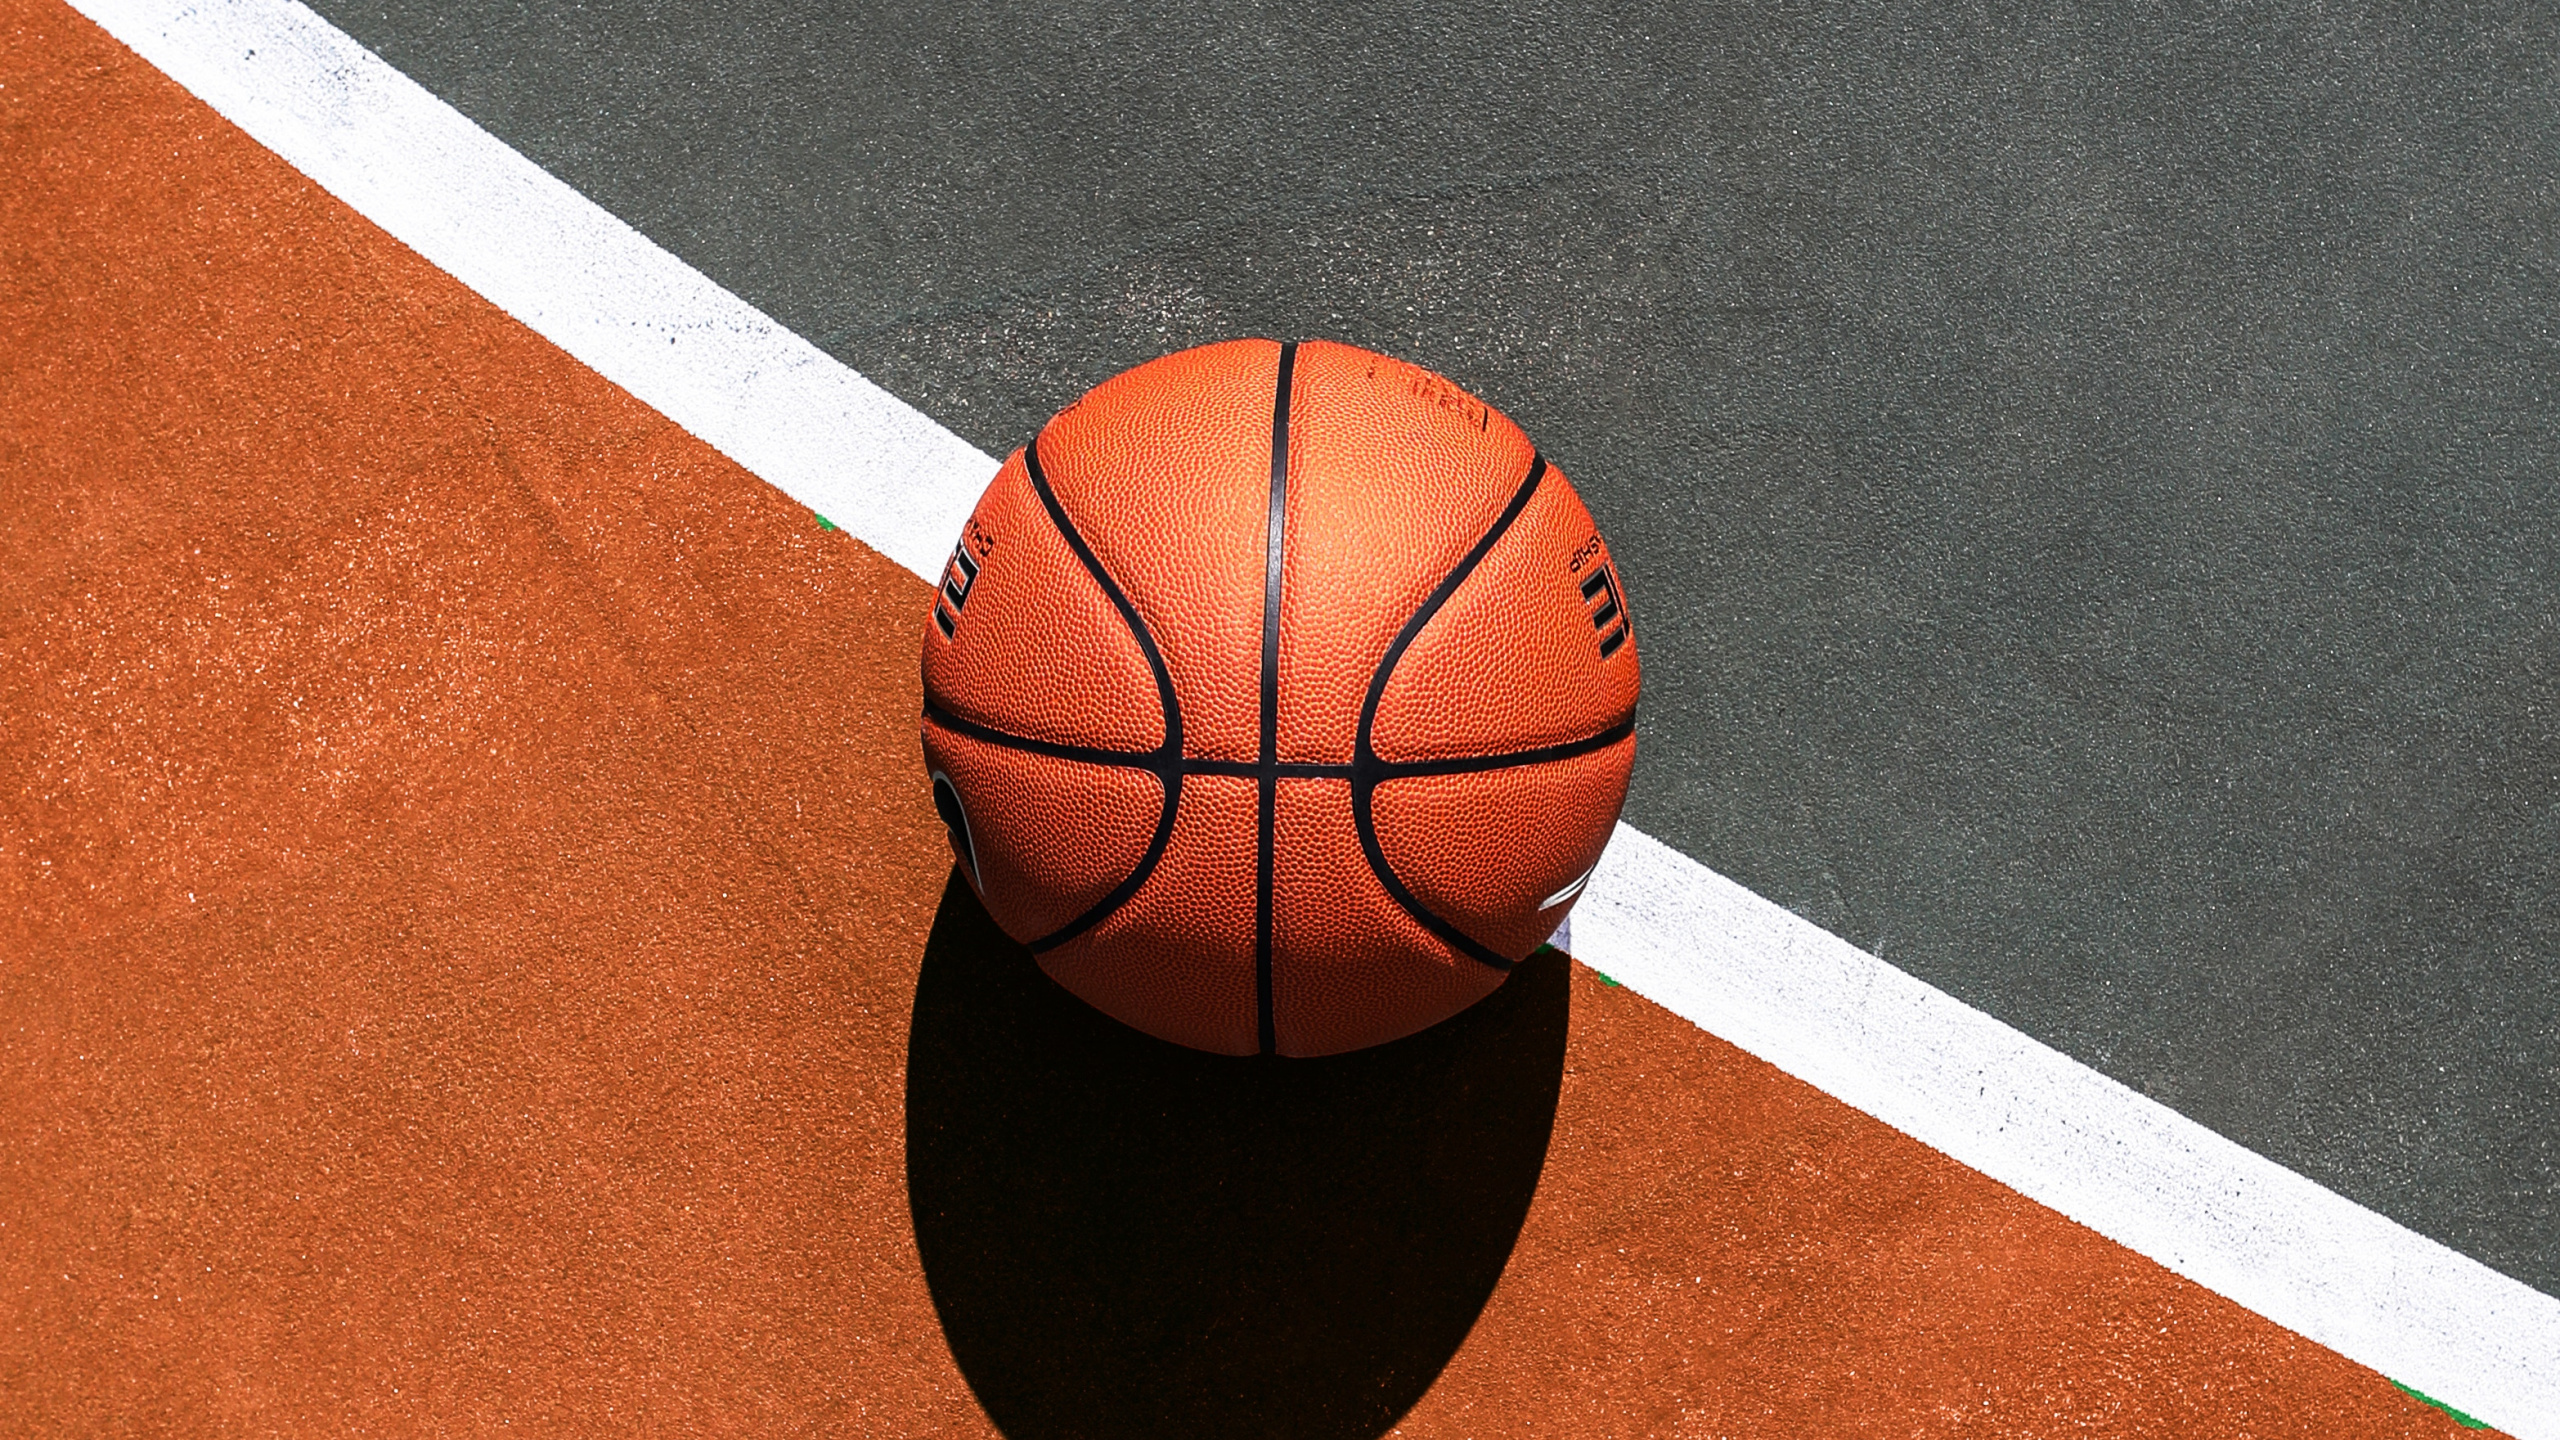 Basket-ball Sur un Terrain de Basket Bleu et Blanc. Wallpaper in 2560x1440 Resolution